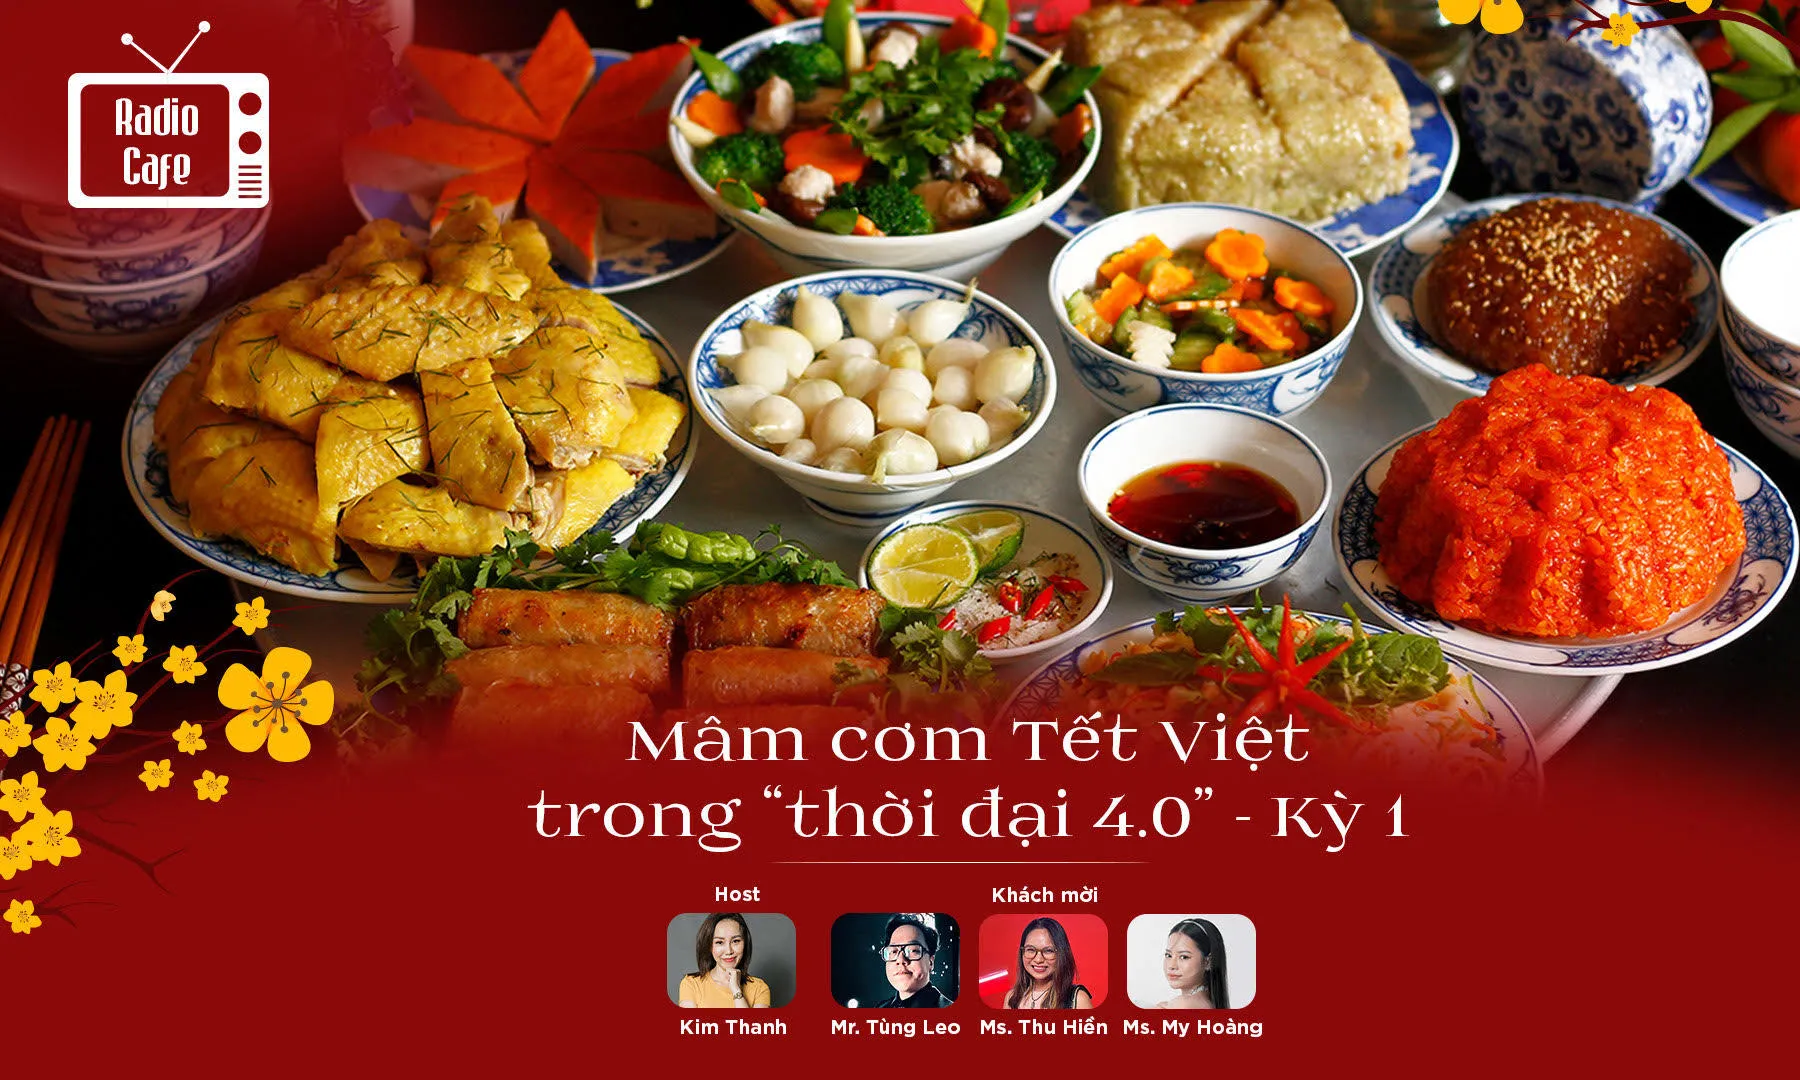 Mâm cơm Tết Việt thời 4.0 - Có những món chỉ ngon khi ăn vào ngày Tết